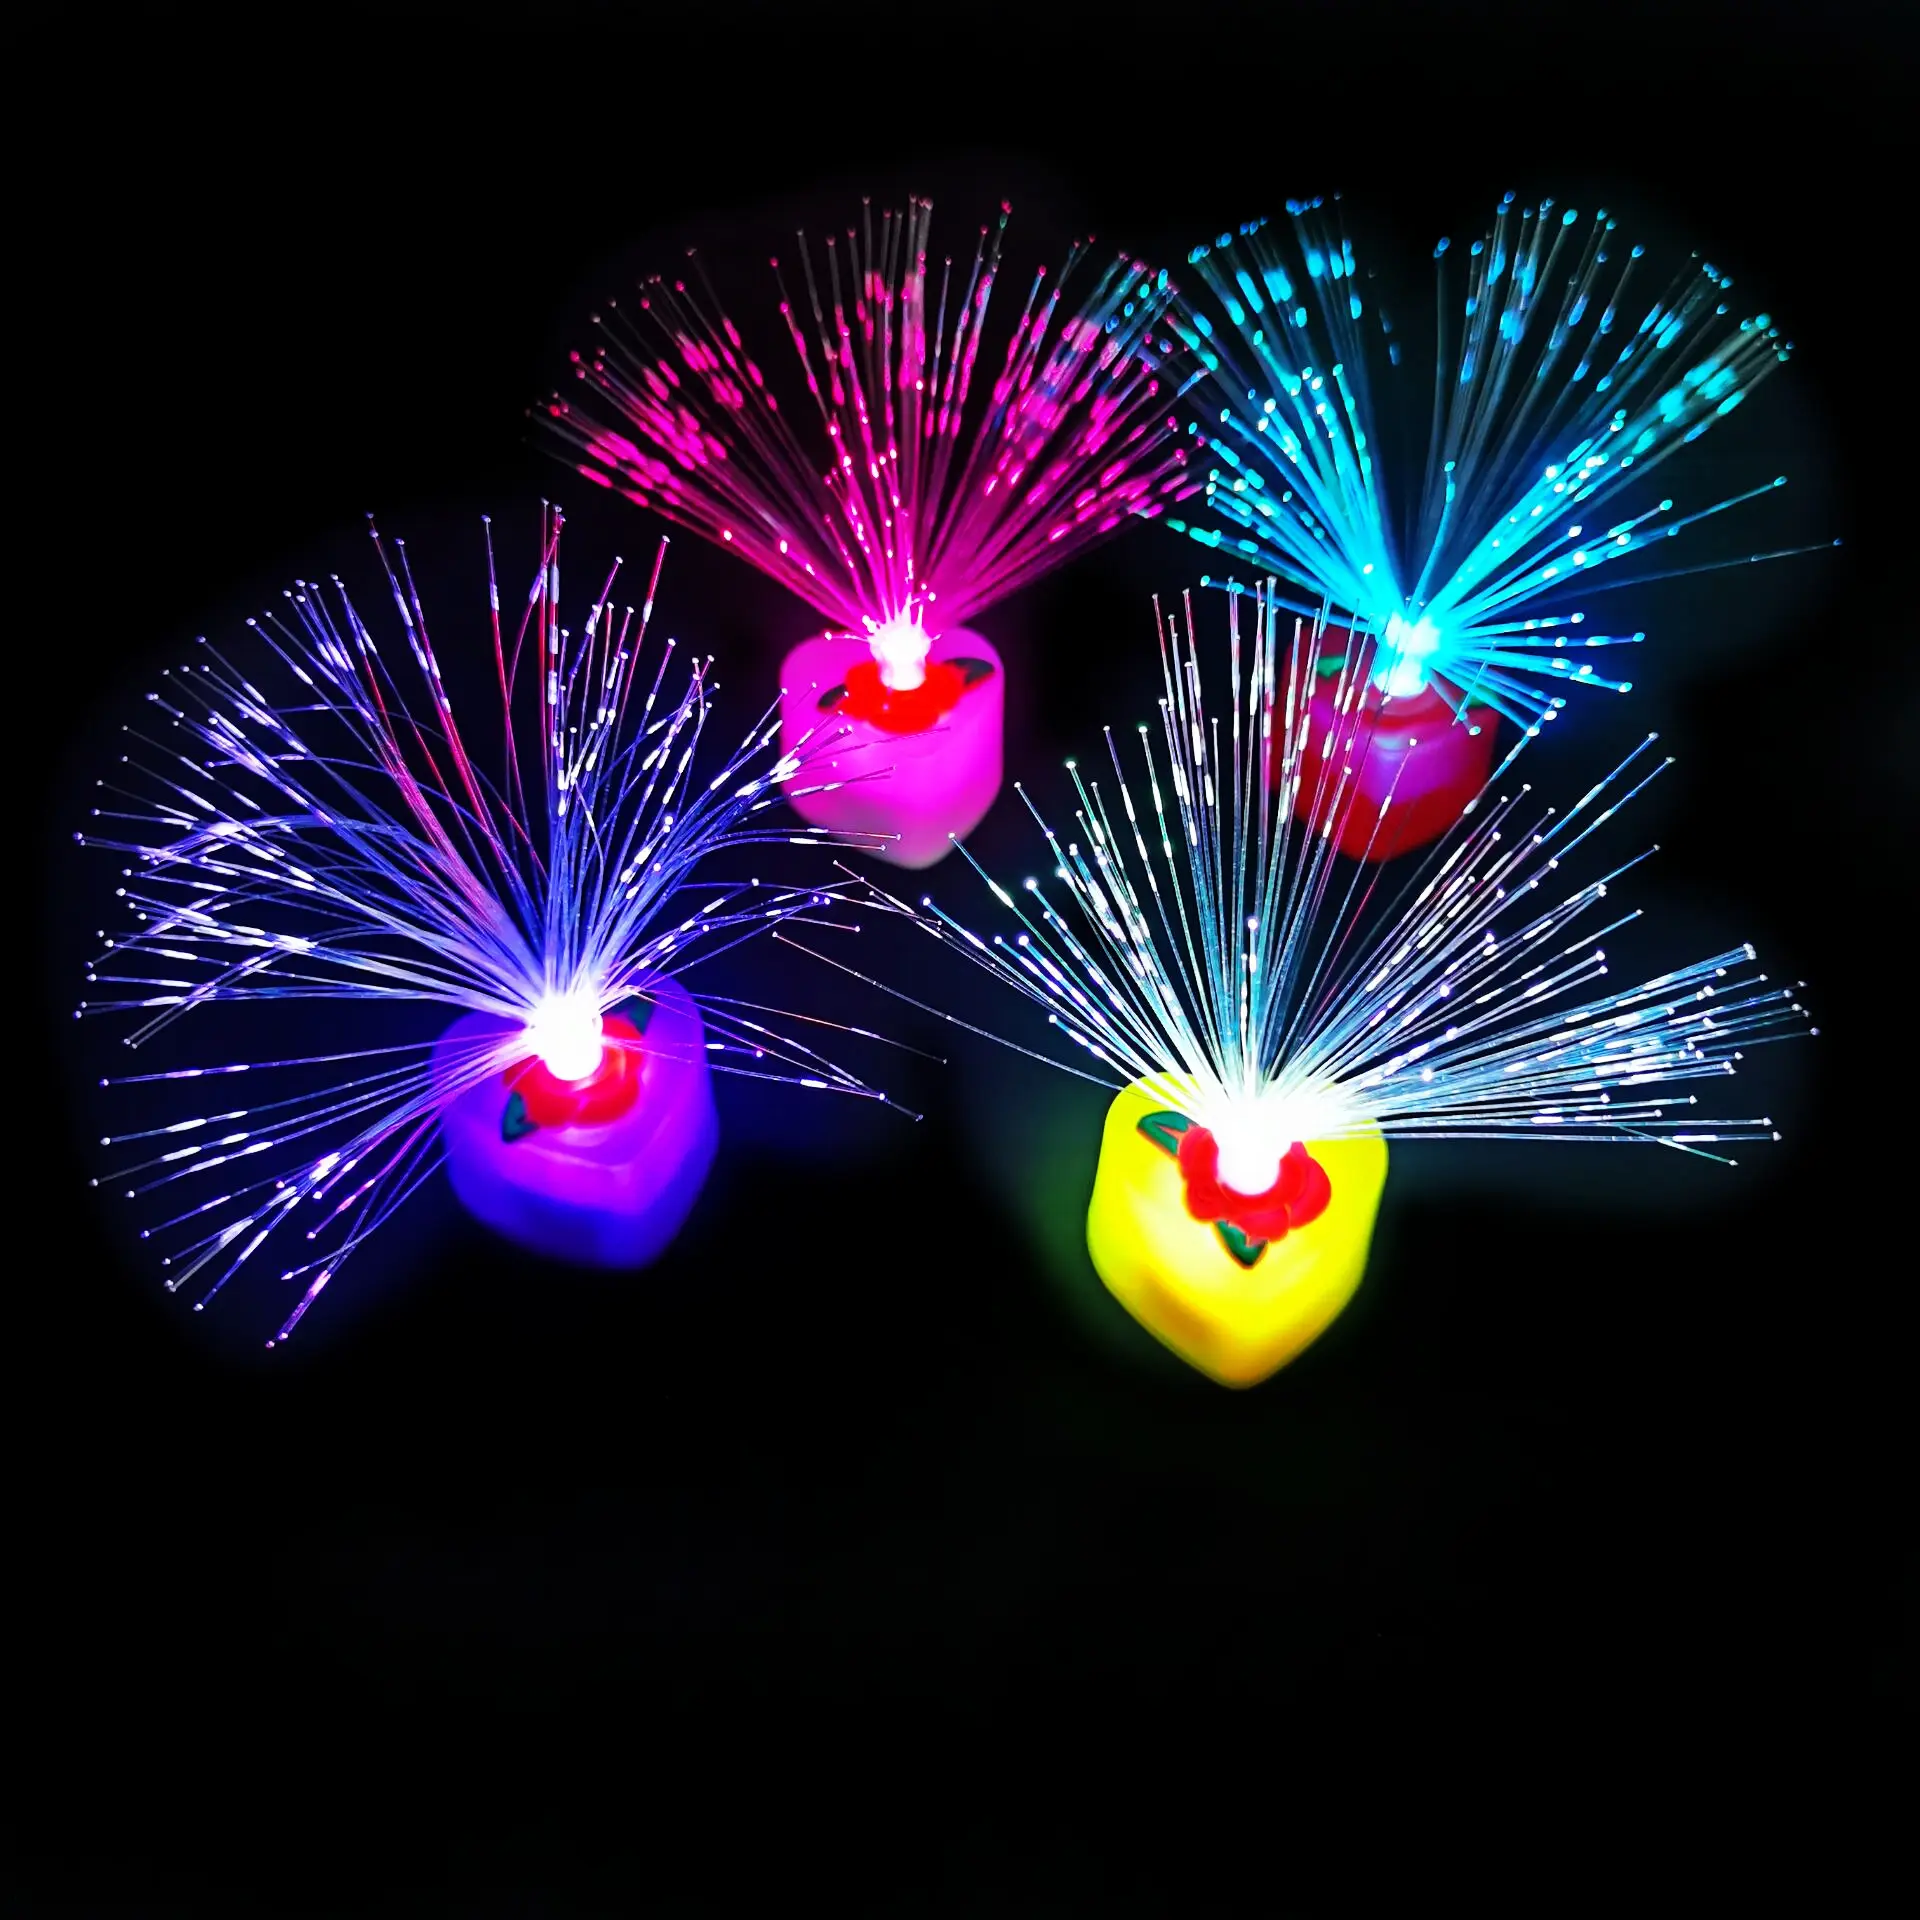 Gypsophila LED elektronik aşk renkli renk değiştiren Fiber optik itirafı düğün tatil dekorasyon mum ışıkları